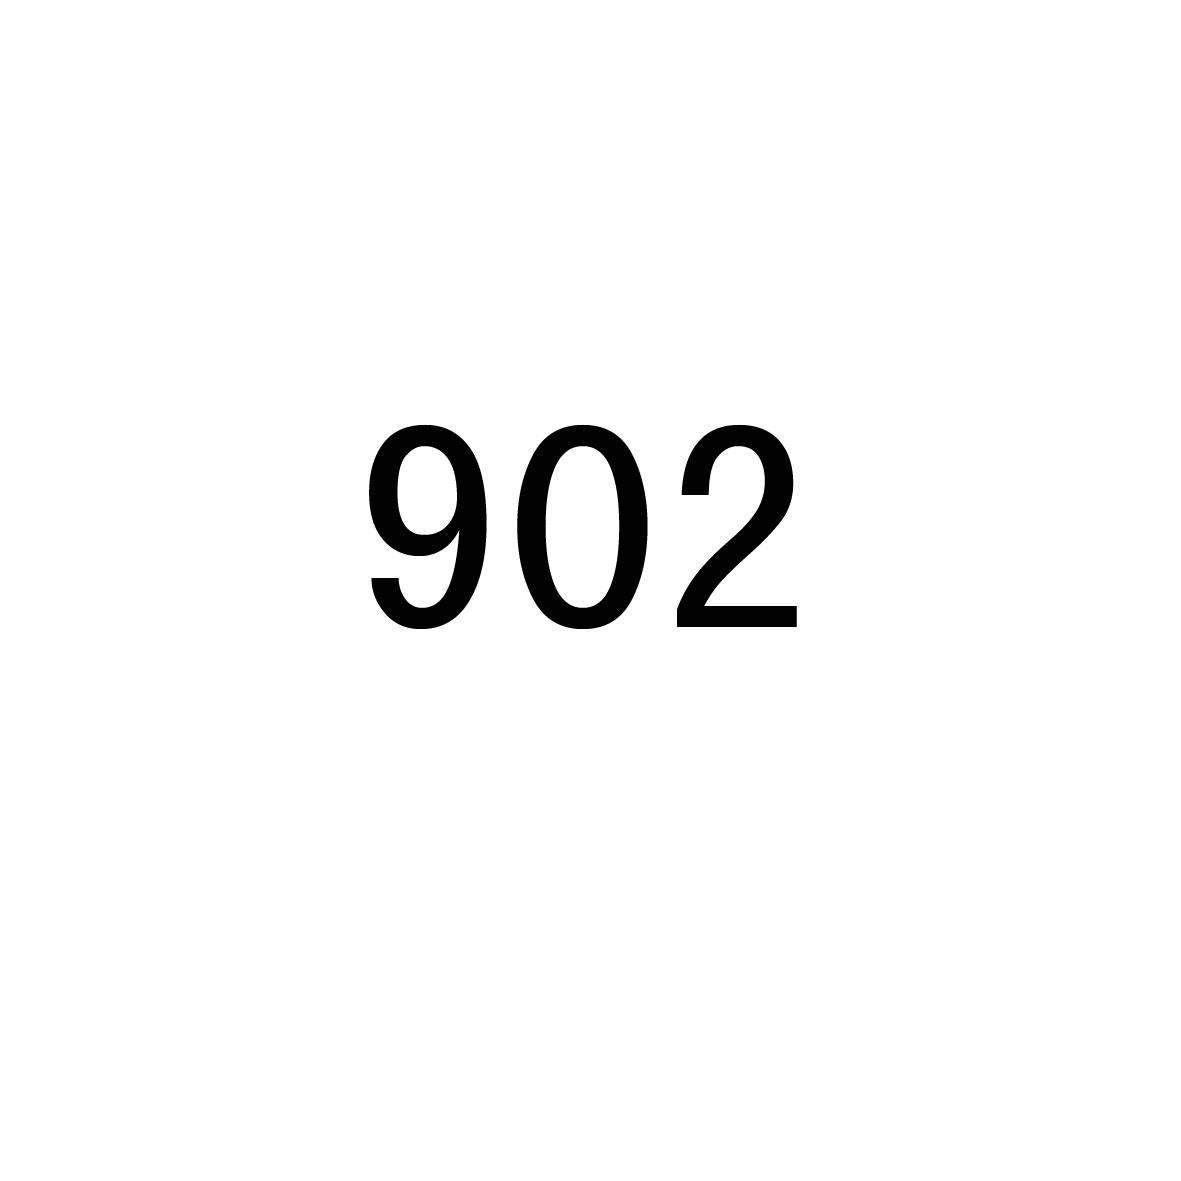  em>902 /em>